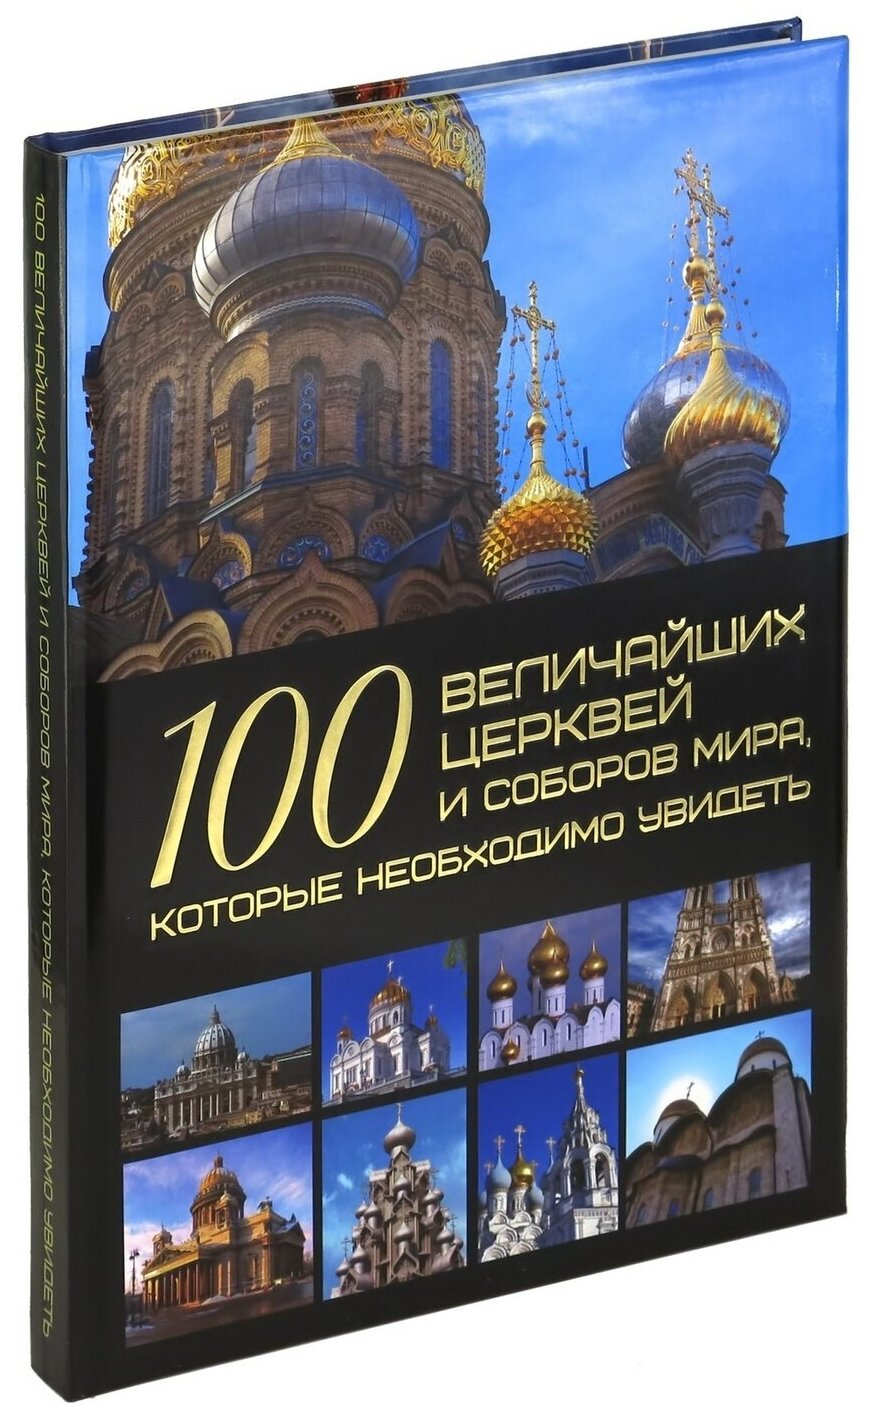 Книга 100 величайших церквей и соборов мира, мировая энциклопедия для детей и взрослых